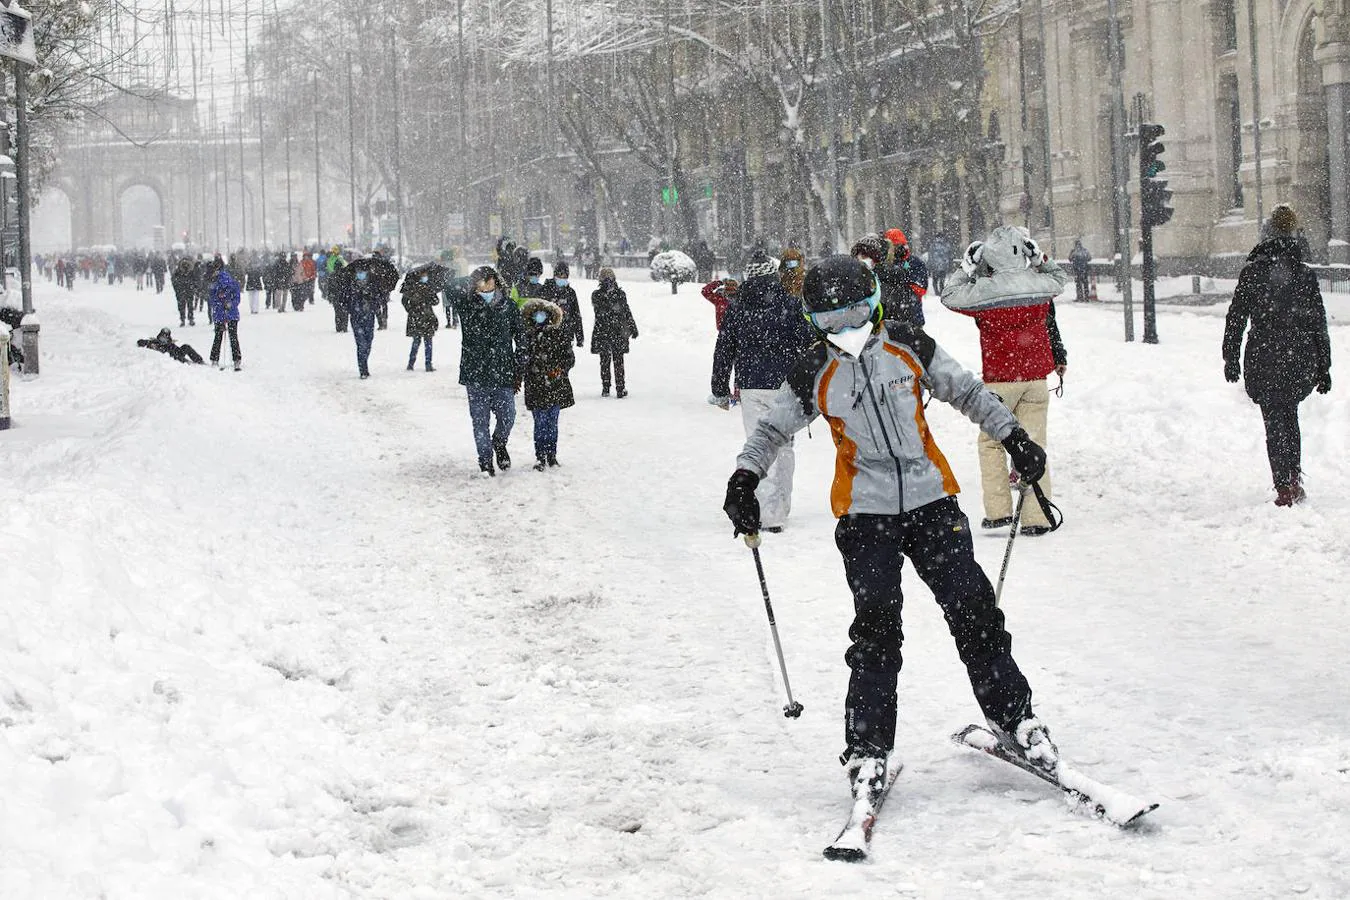 Incluso se puede esquiar. Era tanta la nieve que copaba las calles de Madrid, que algunos incluso sacaron a pasear sus esquíes creando insólitas imágenes; esquiando por la calle Alcalá.